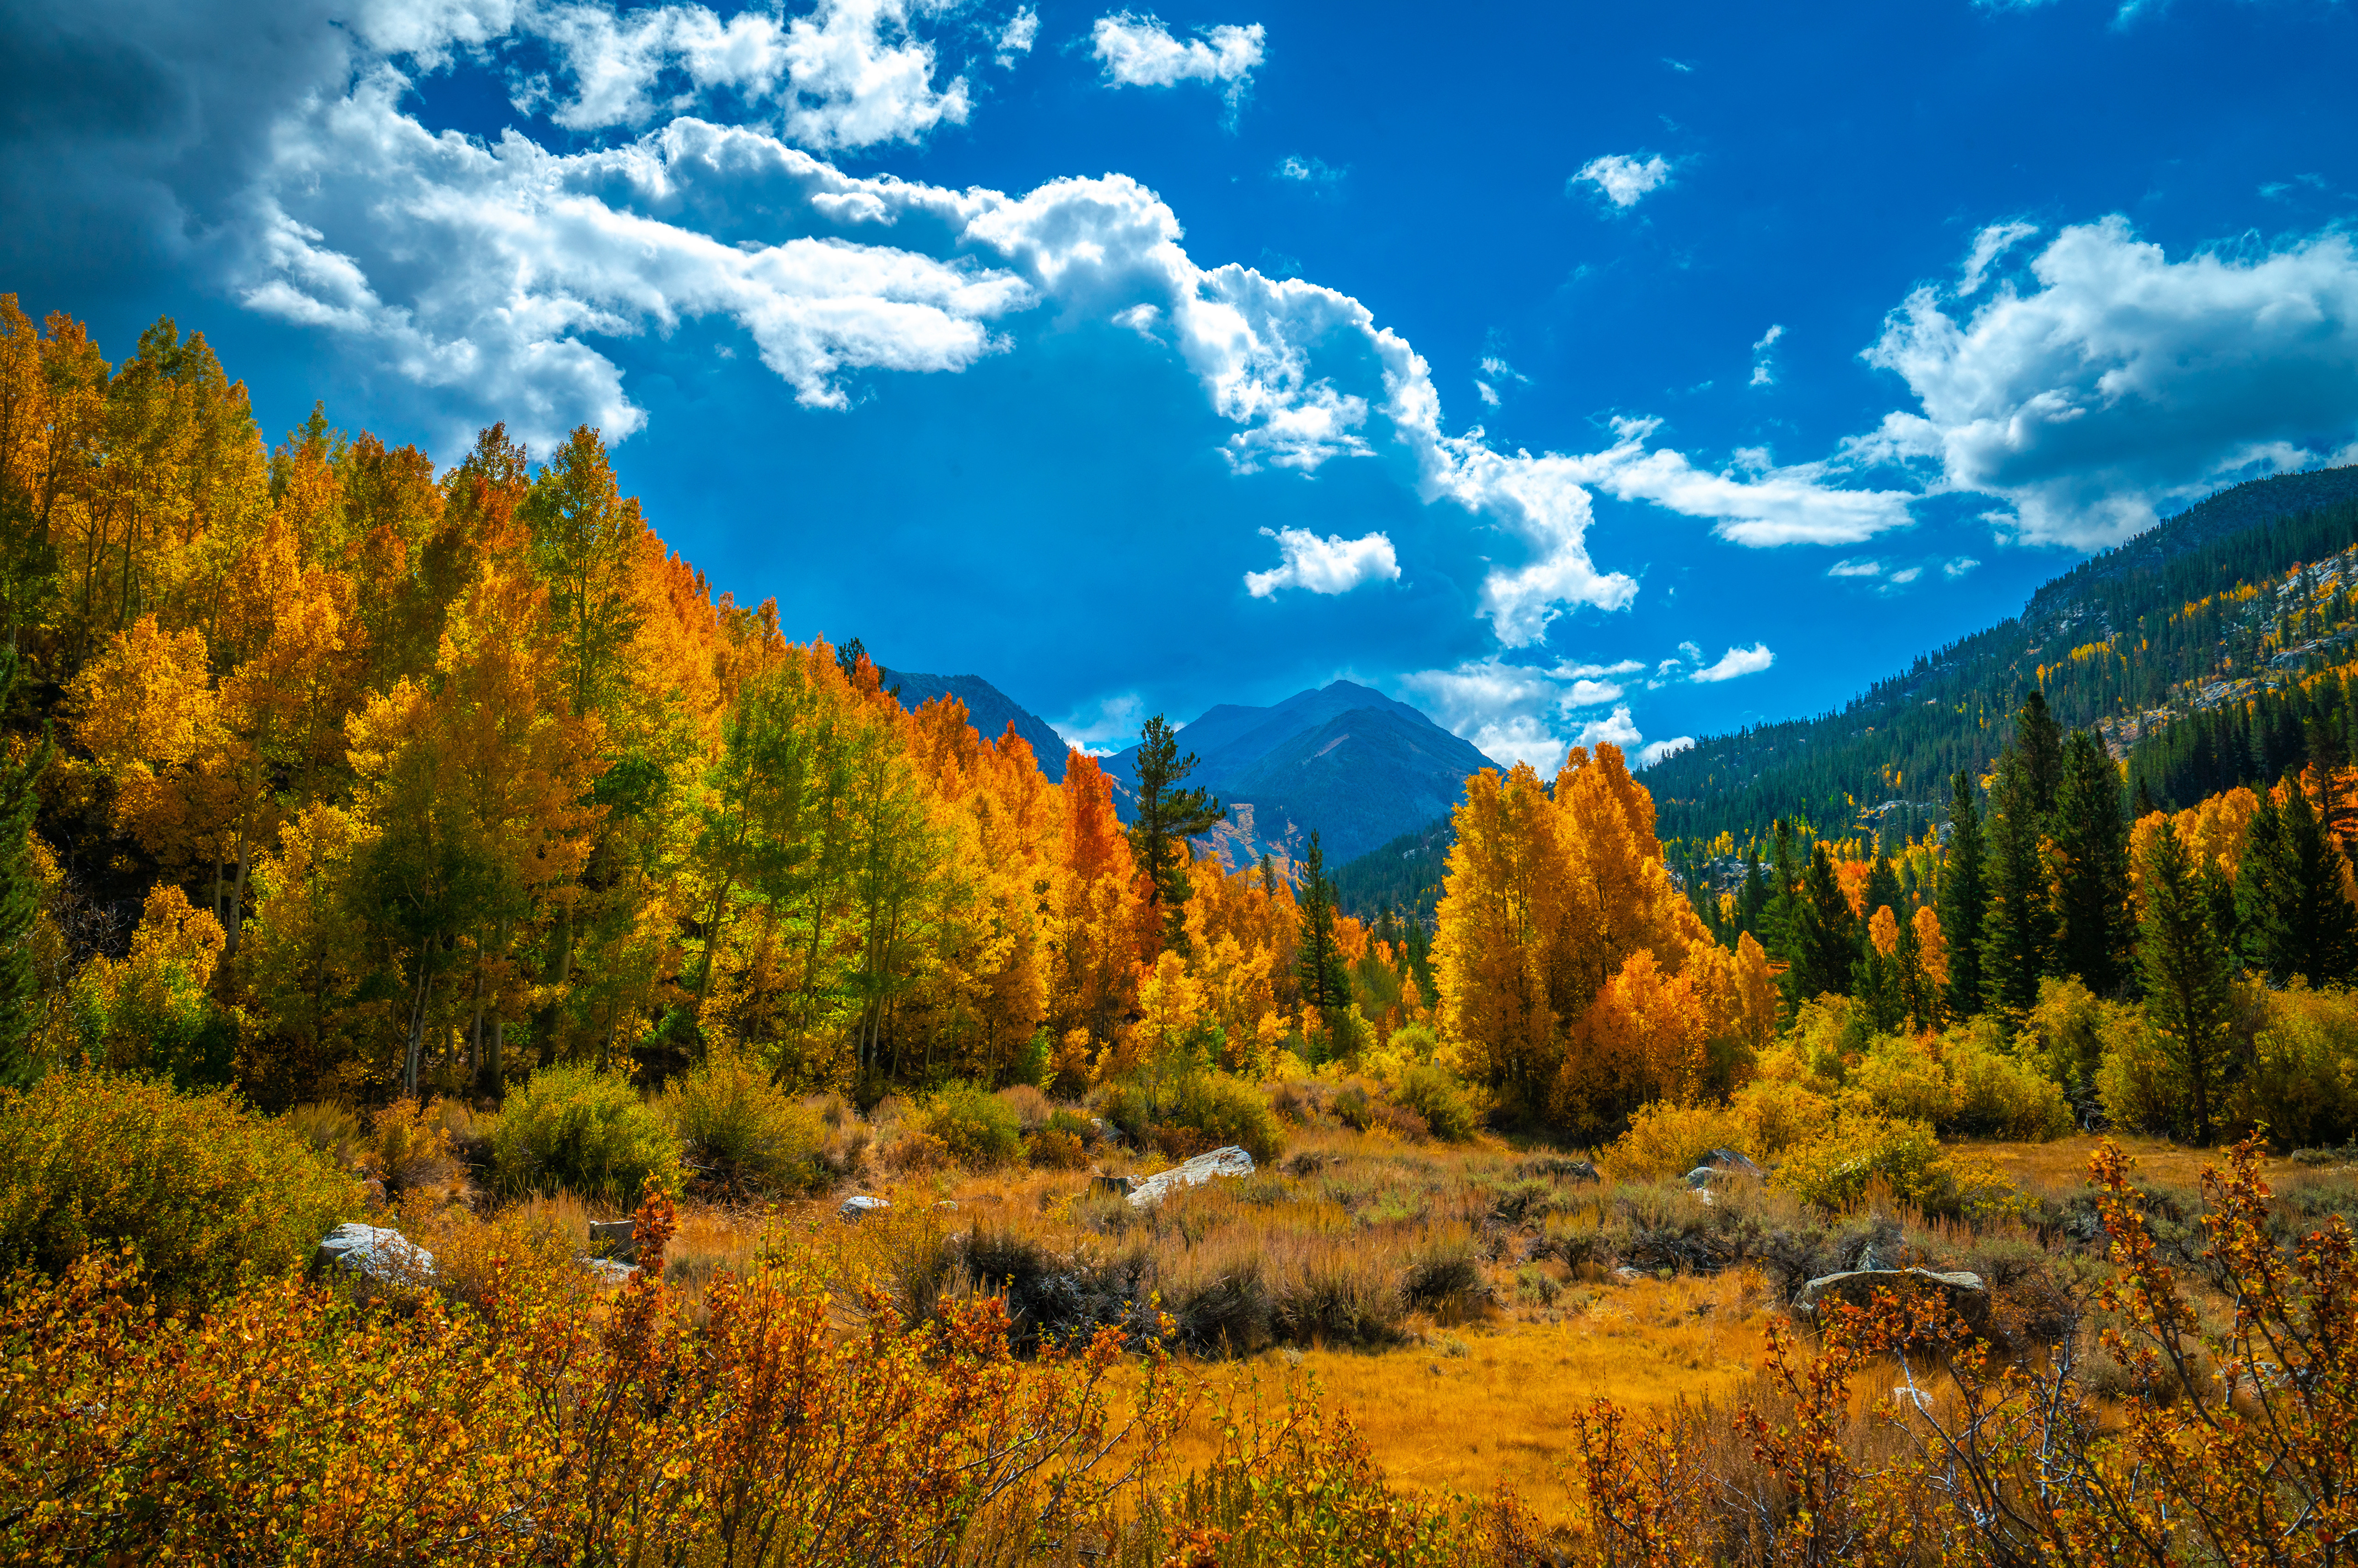 壁紙 51x3405 美国 山 秋季 風景攝影 加利福尼亚州 树 云 大自然 下载 照片